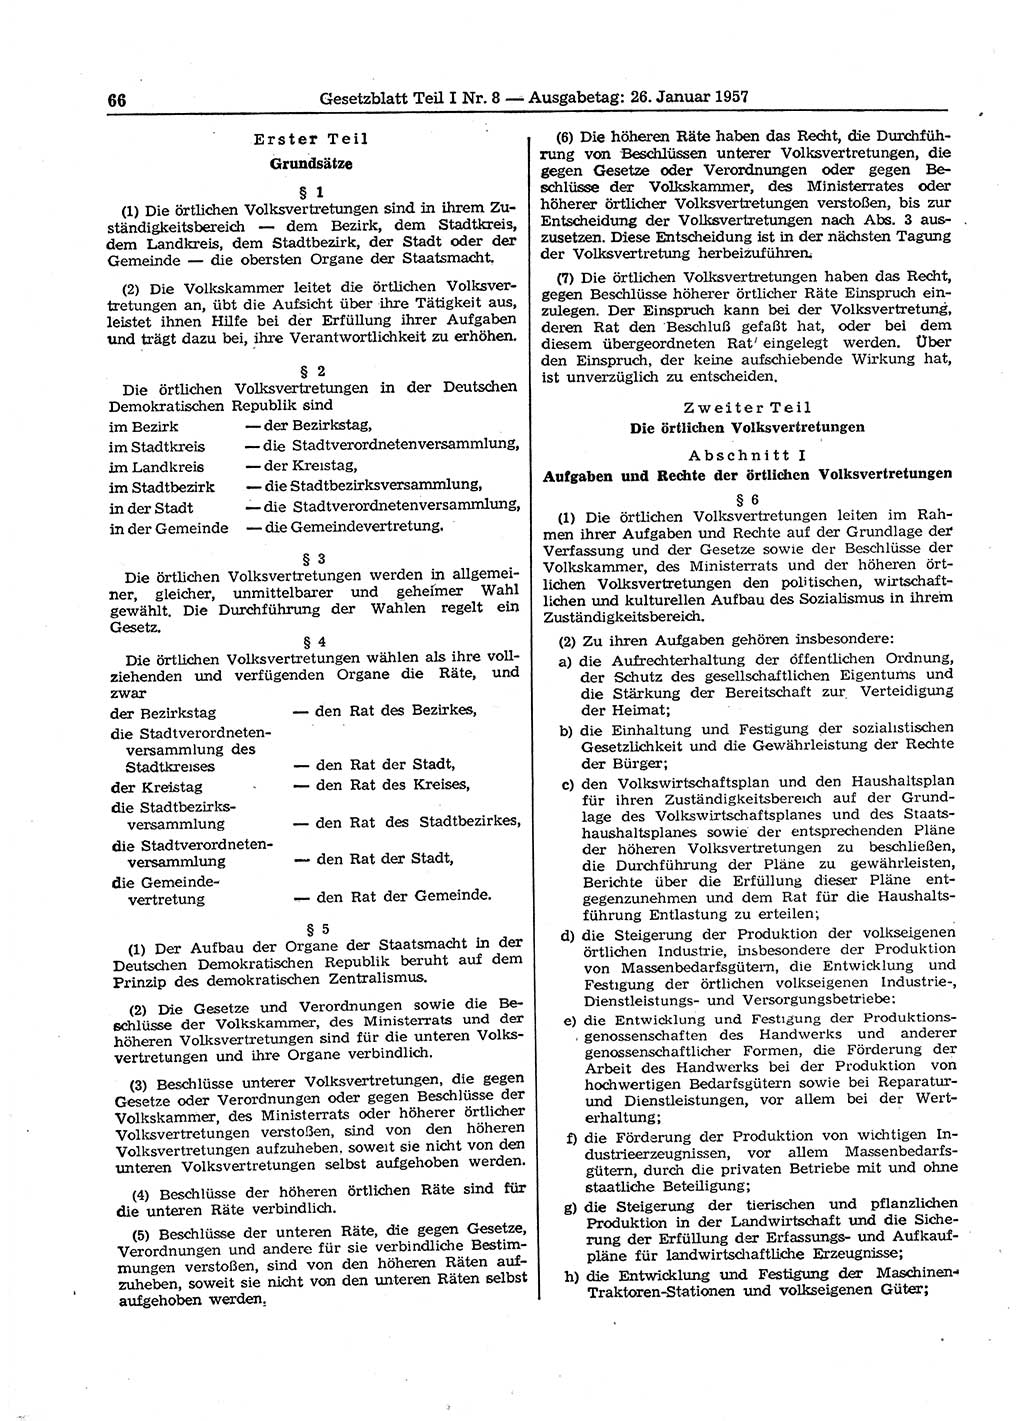 Gesetzblatt (GBl.) der Deutschen Demokratischen Republik (DDR) Teil Ⅰ 1957, Seite 66 (GBl. DDR Ⅰ 1957, S. 66)